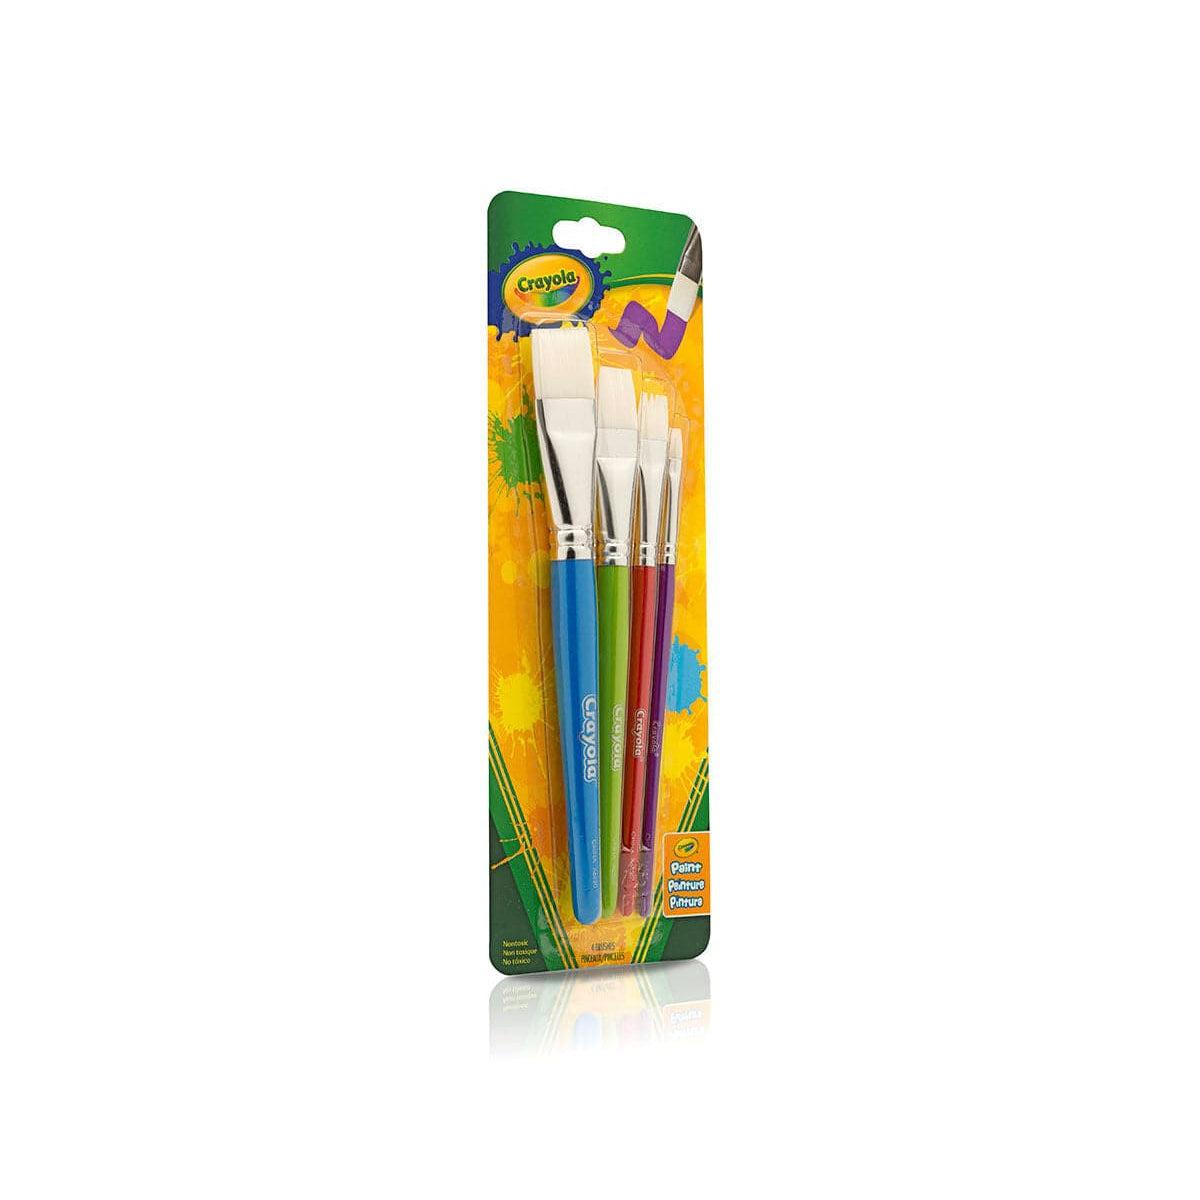 Crayola-Crayola 4 Count Big Paintbrushes Flat Brush Set-591815-Legacy Toys